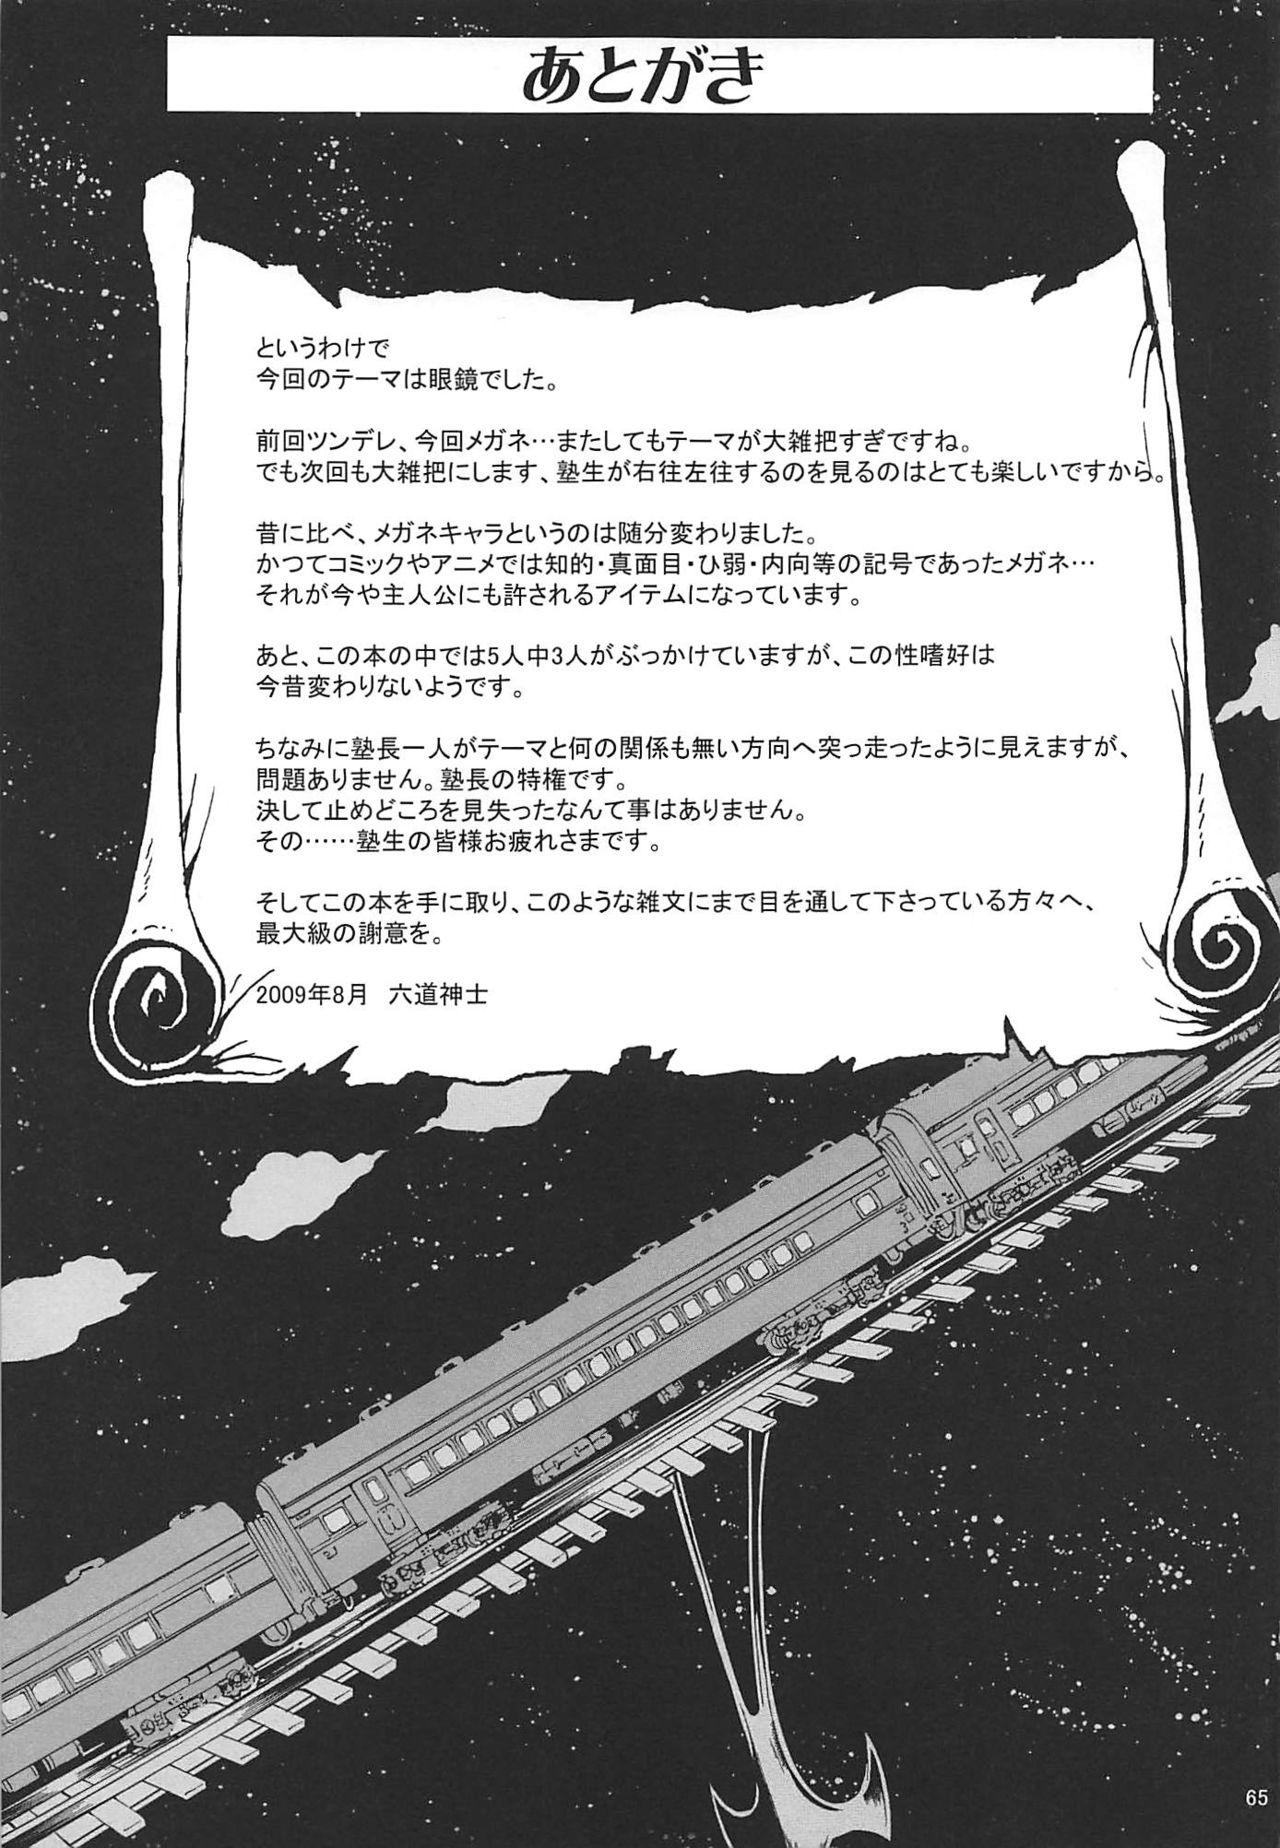 Sub Juku Hou 02 - Neon genesis evangelion Galaxy express 999 Nurarihyon no mago Teensnow - Page 64